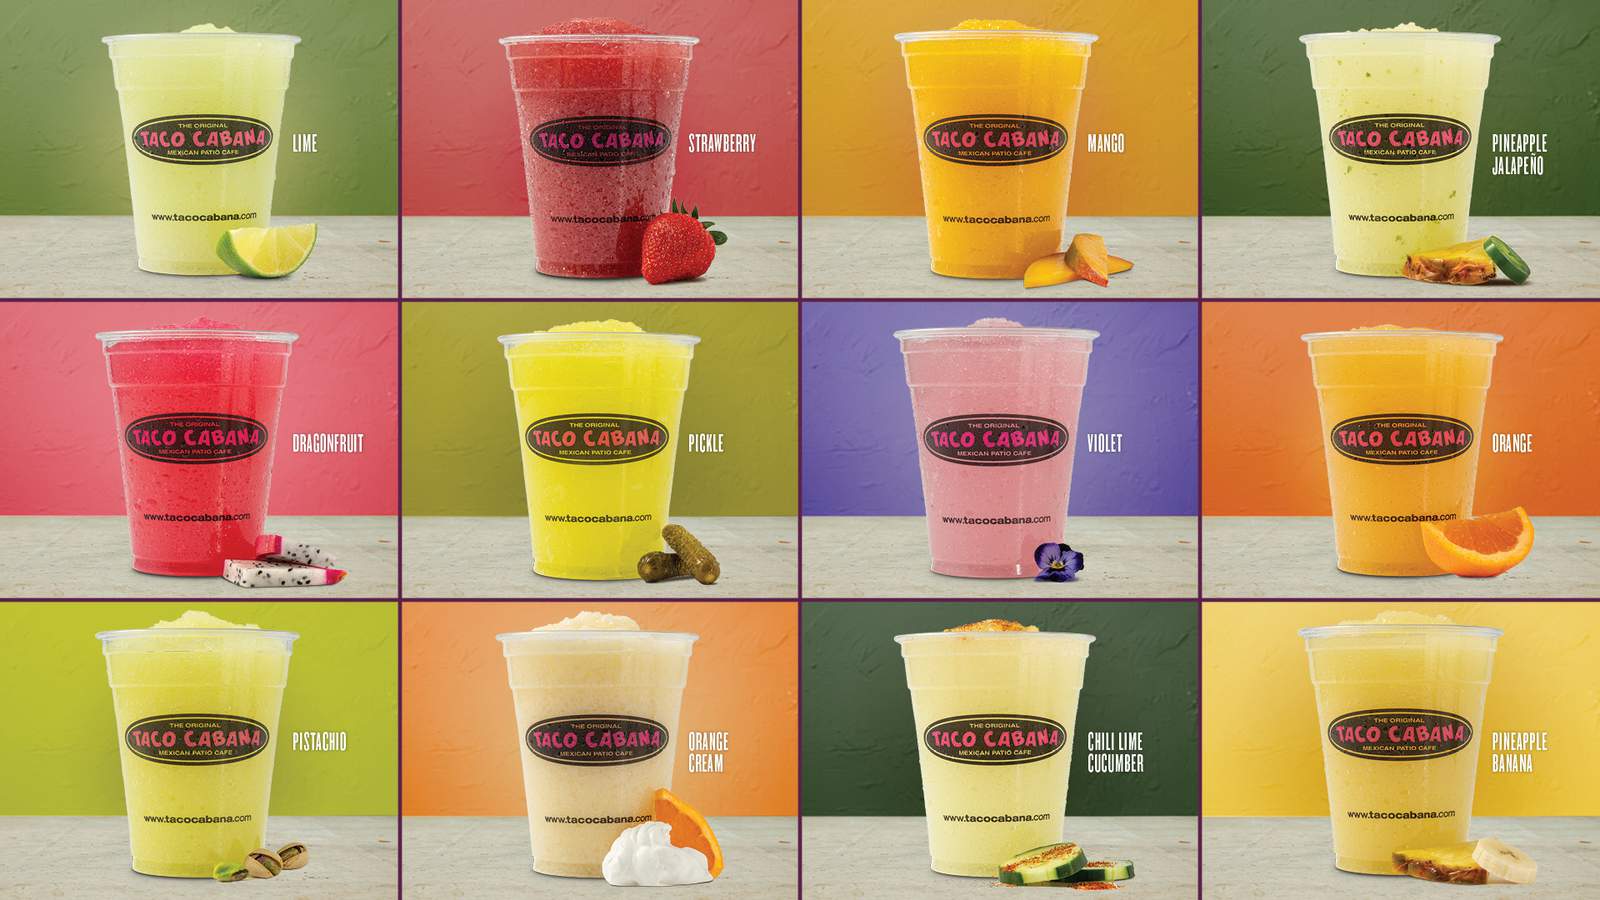 Tex-Mex chain Taco Cabana launches 9 new margarita flavors